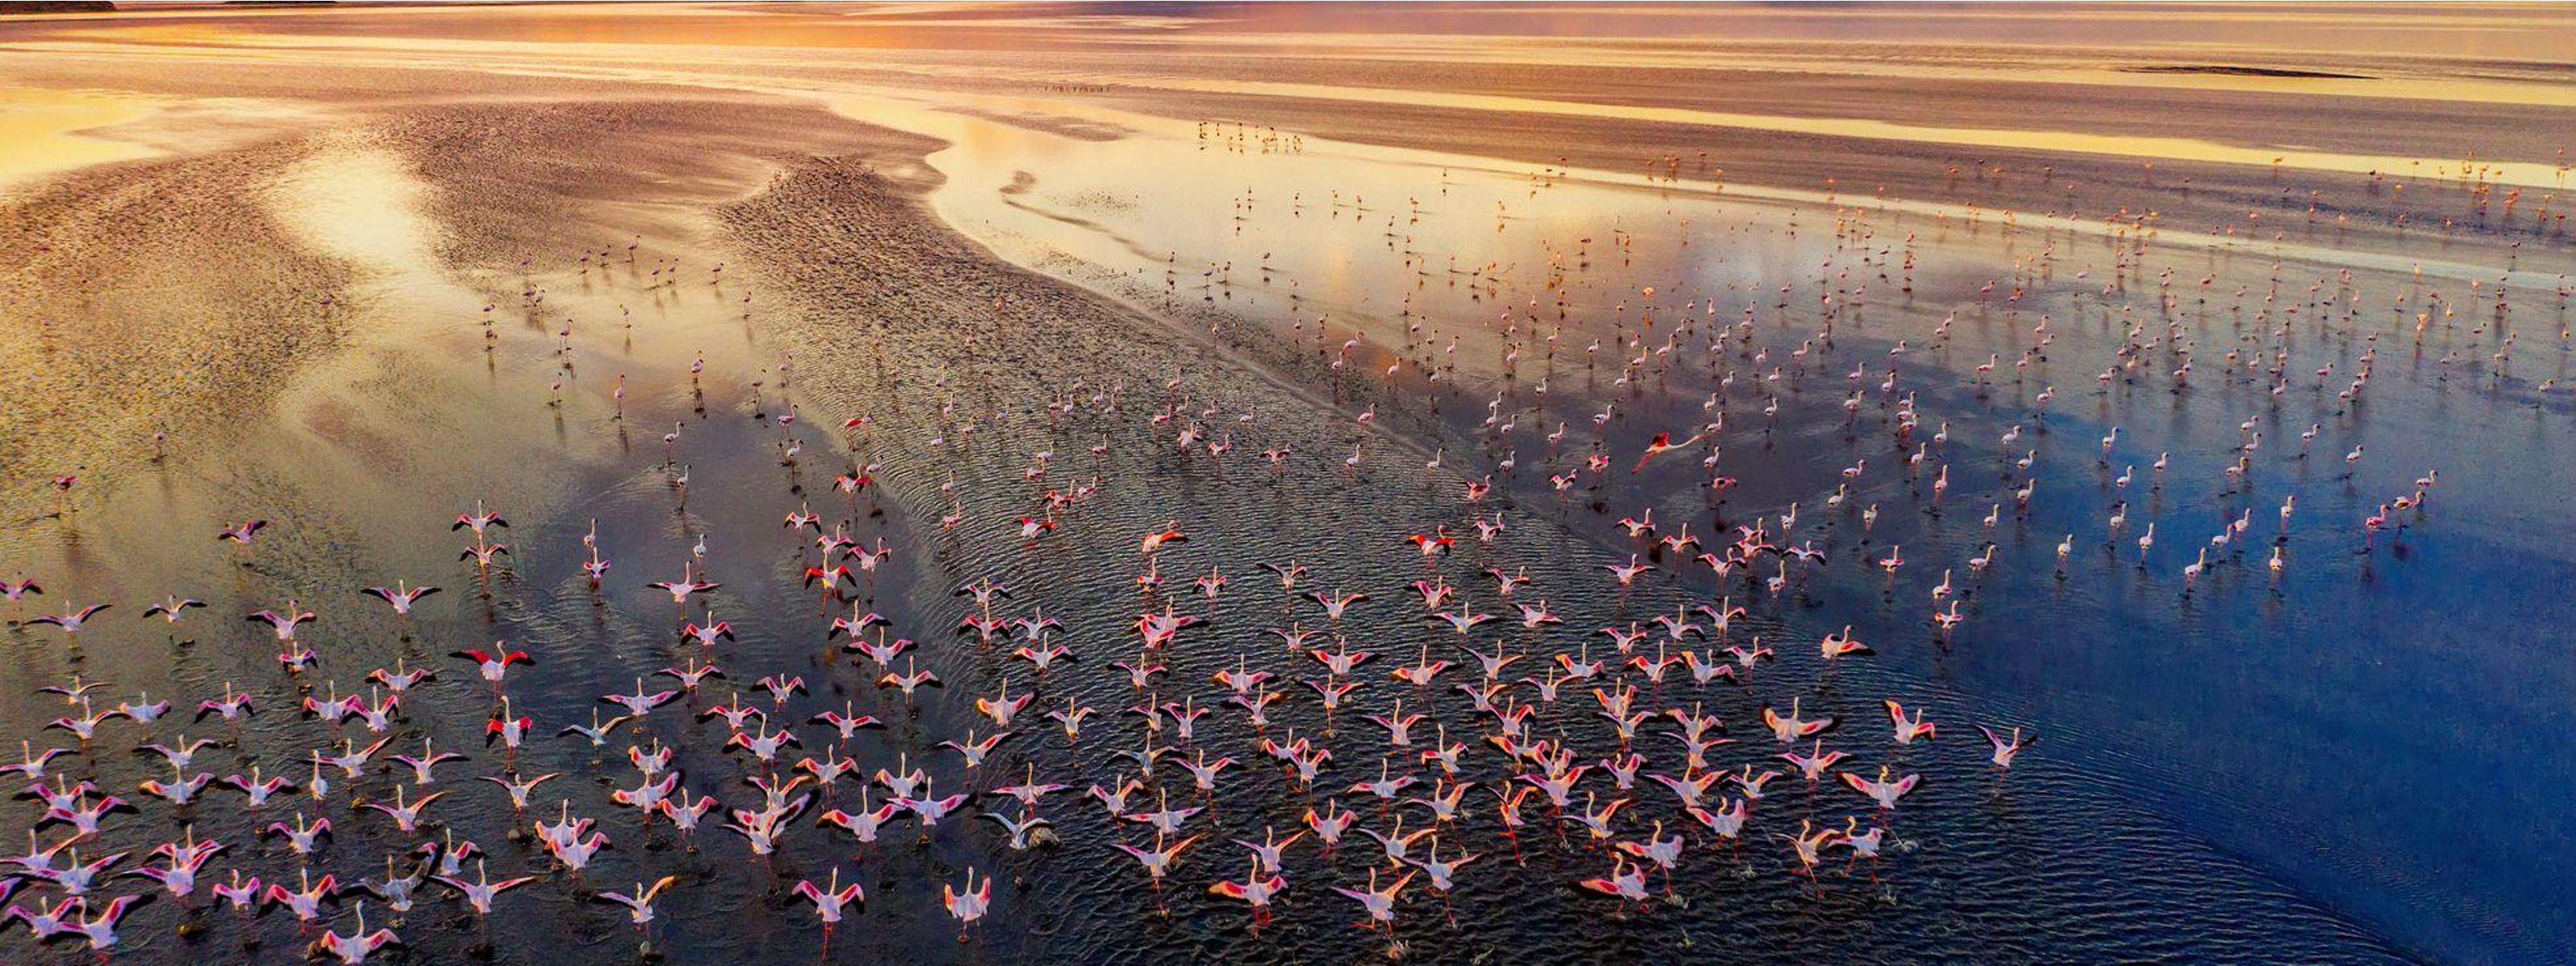 Aerial view of flamingos in a lake in Kenya at sunrise.